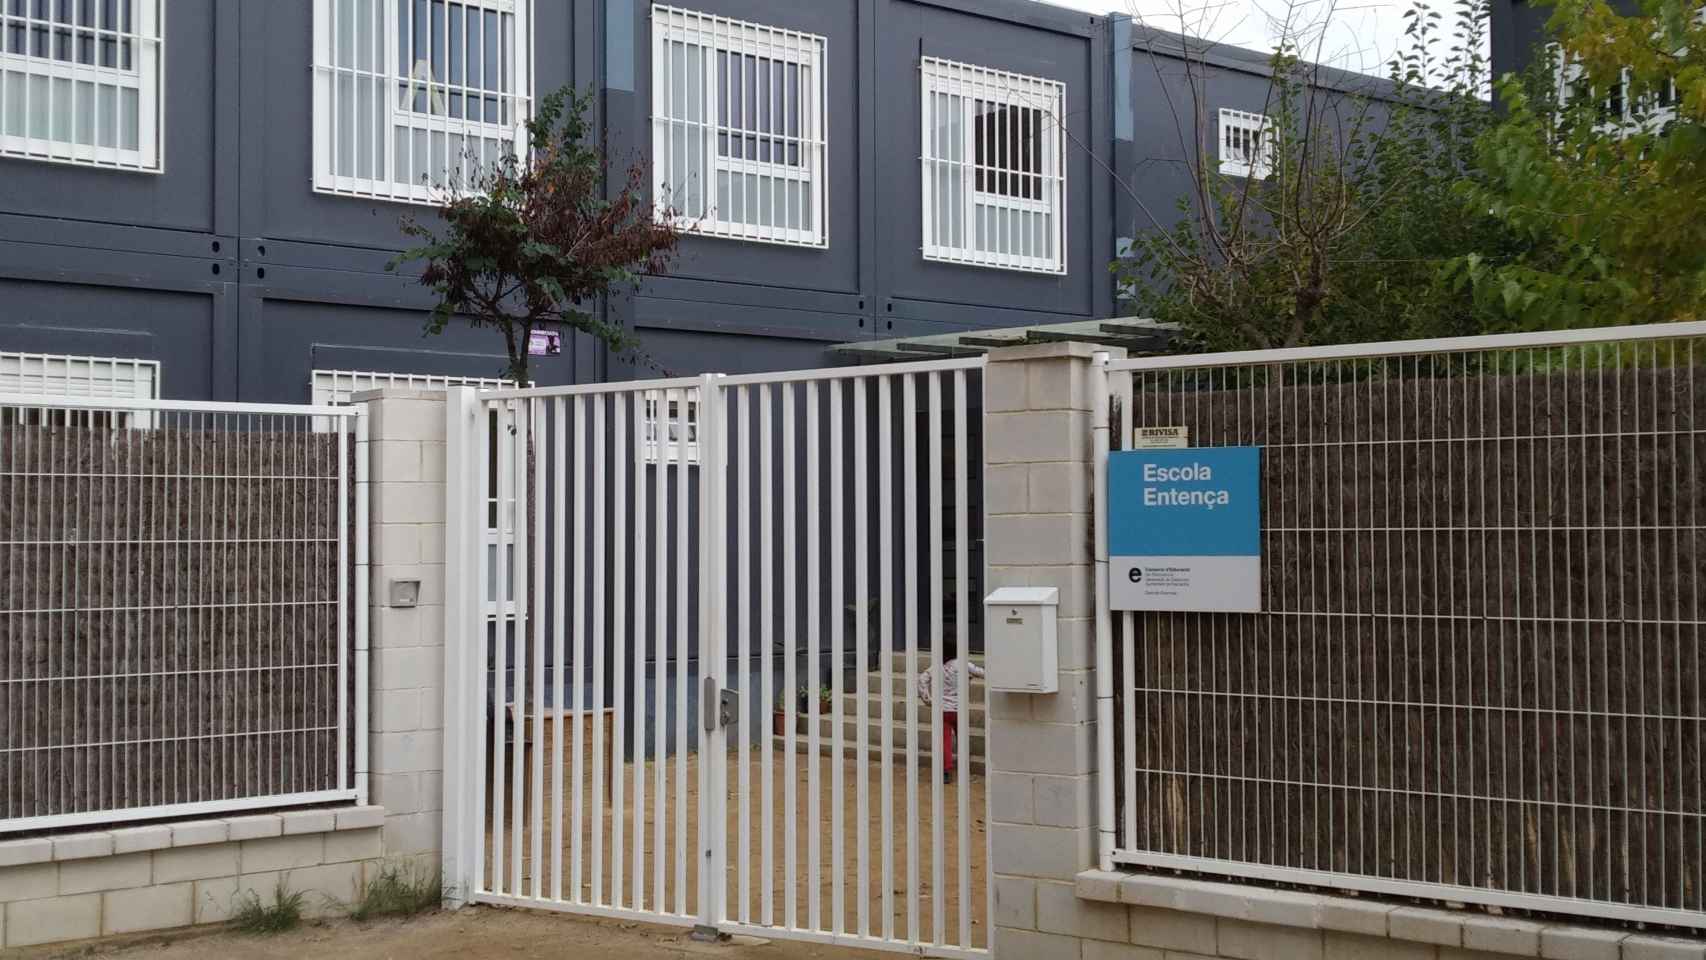 Las familias de la escuela Entença reclamaron el traslado inmediato por riesgos en la salud / JORDI SUBIRANA